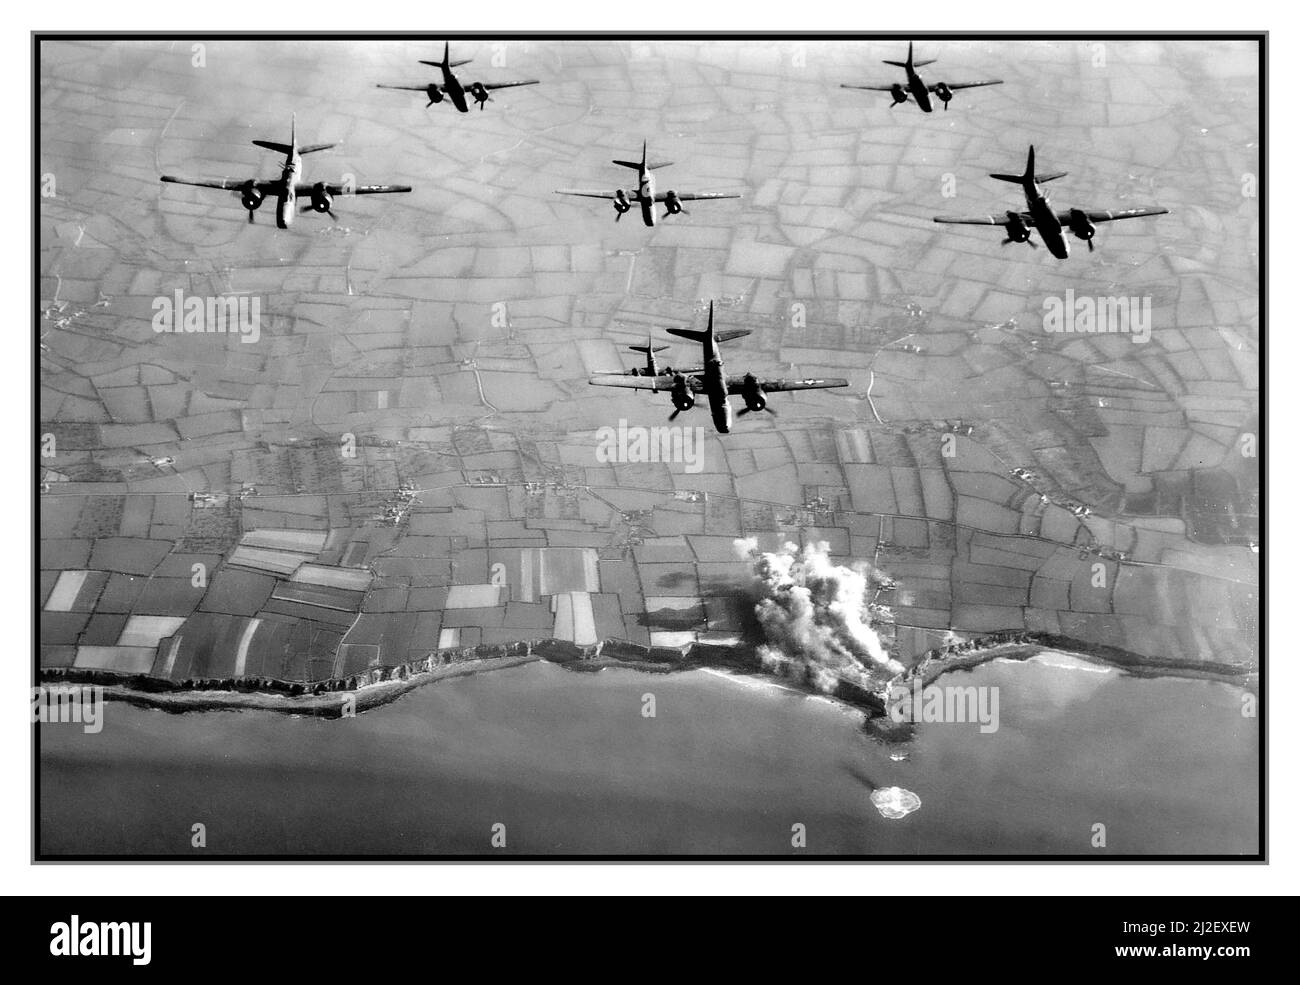 D-Day WW2 pré-invasion aérienne juin 1944 bombardement ponctuel de la Pointe du hoc Normandie Nord de la France, image des bombardiers de la neuvième Force aérienne B26 de l'USAF bombardant les fortifications nazies avant l'invasion du D-Day. Pointe du hoc a été l'emplacement d'une série de bunkers allemands et de postes de mitrailleuses. Avant l'invasion de la Normandie, l'armée allemande a fortifié la région avec des casémates en béton et des puits d'armes à feu. Le jour J, le groupe d'assaut des Rangers de l'armée des États-Unis a attaqué et capturé la Pointe du hoc après avoir élancé les falaises. Banque D'Images